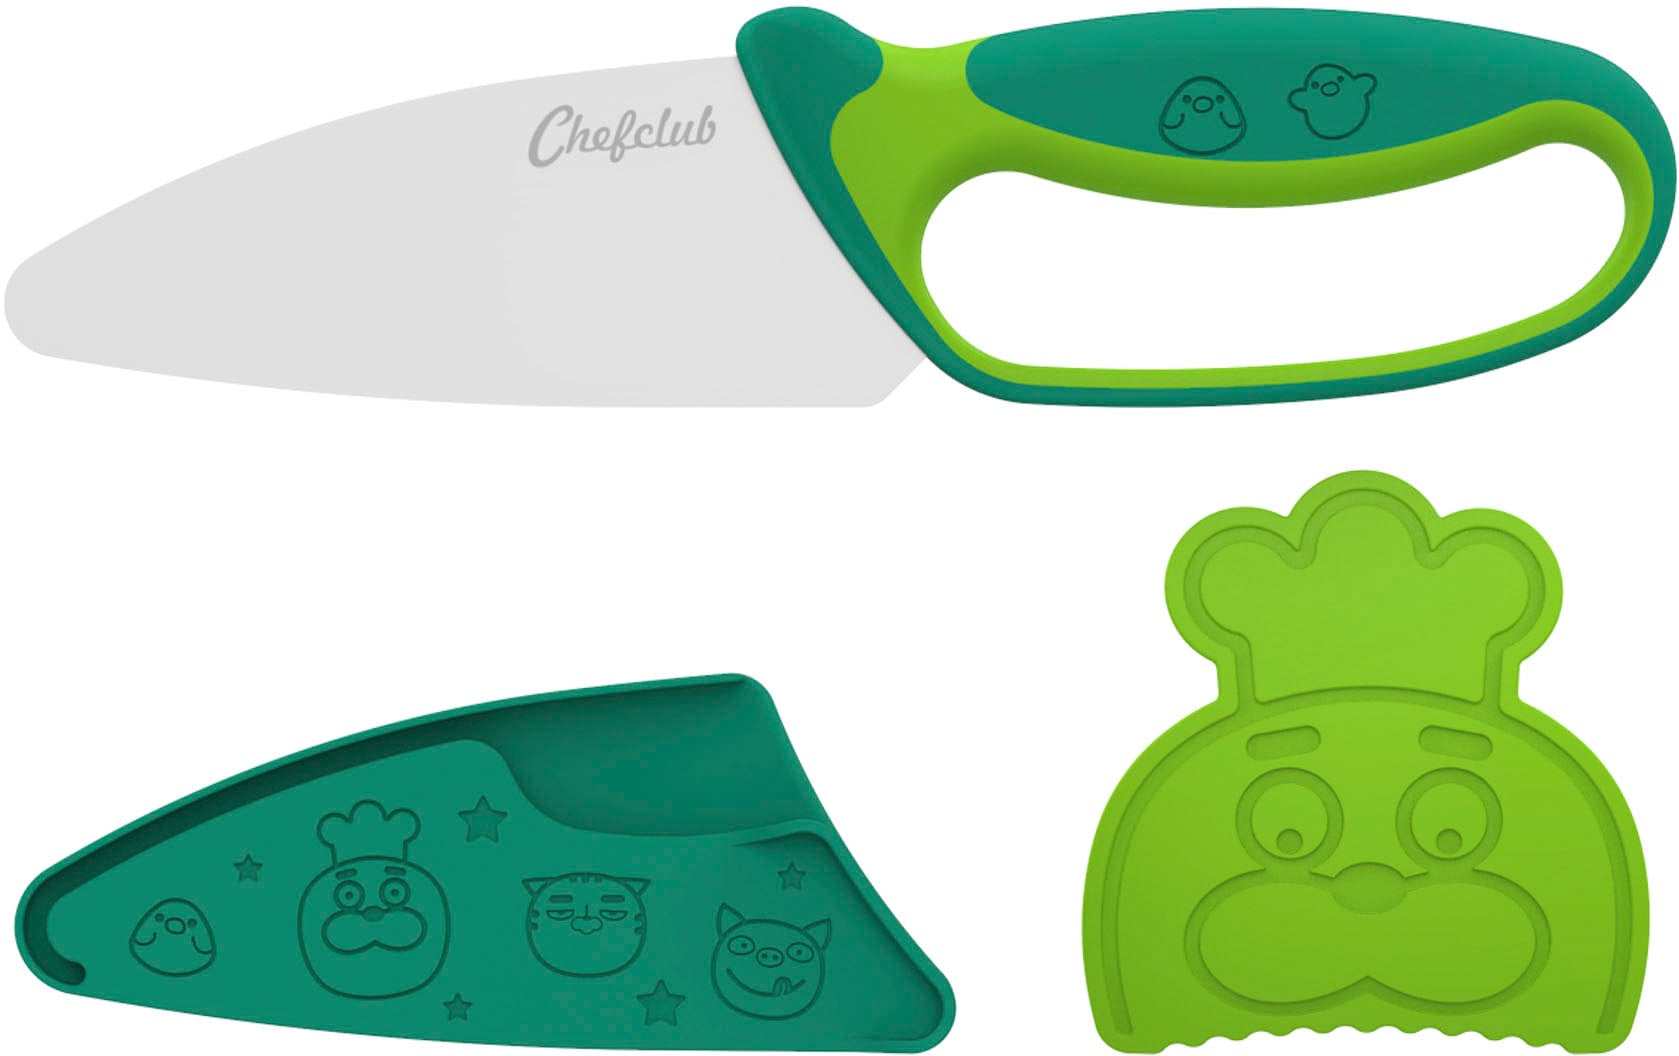 Kinderkochmesser »Messer für Kinder, grün«, (Set, 3 tlg.)